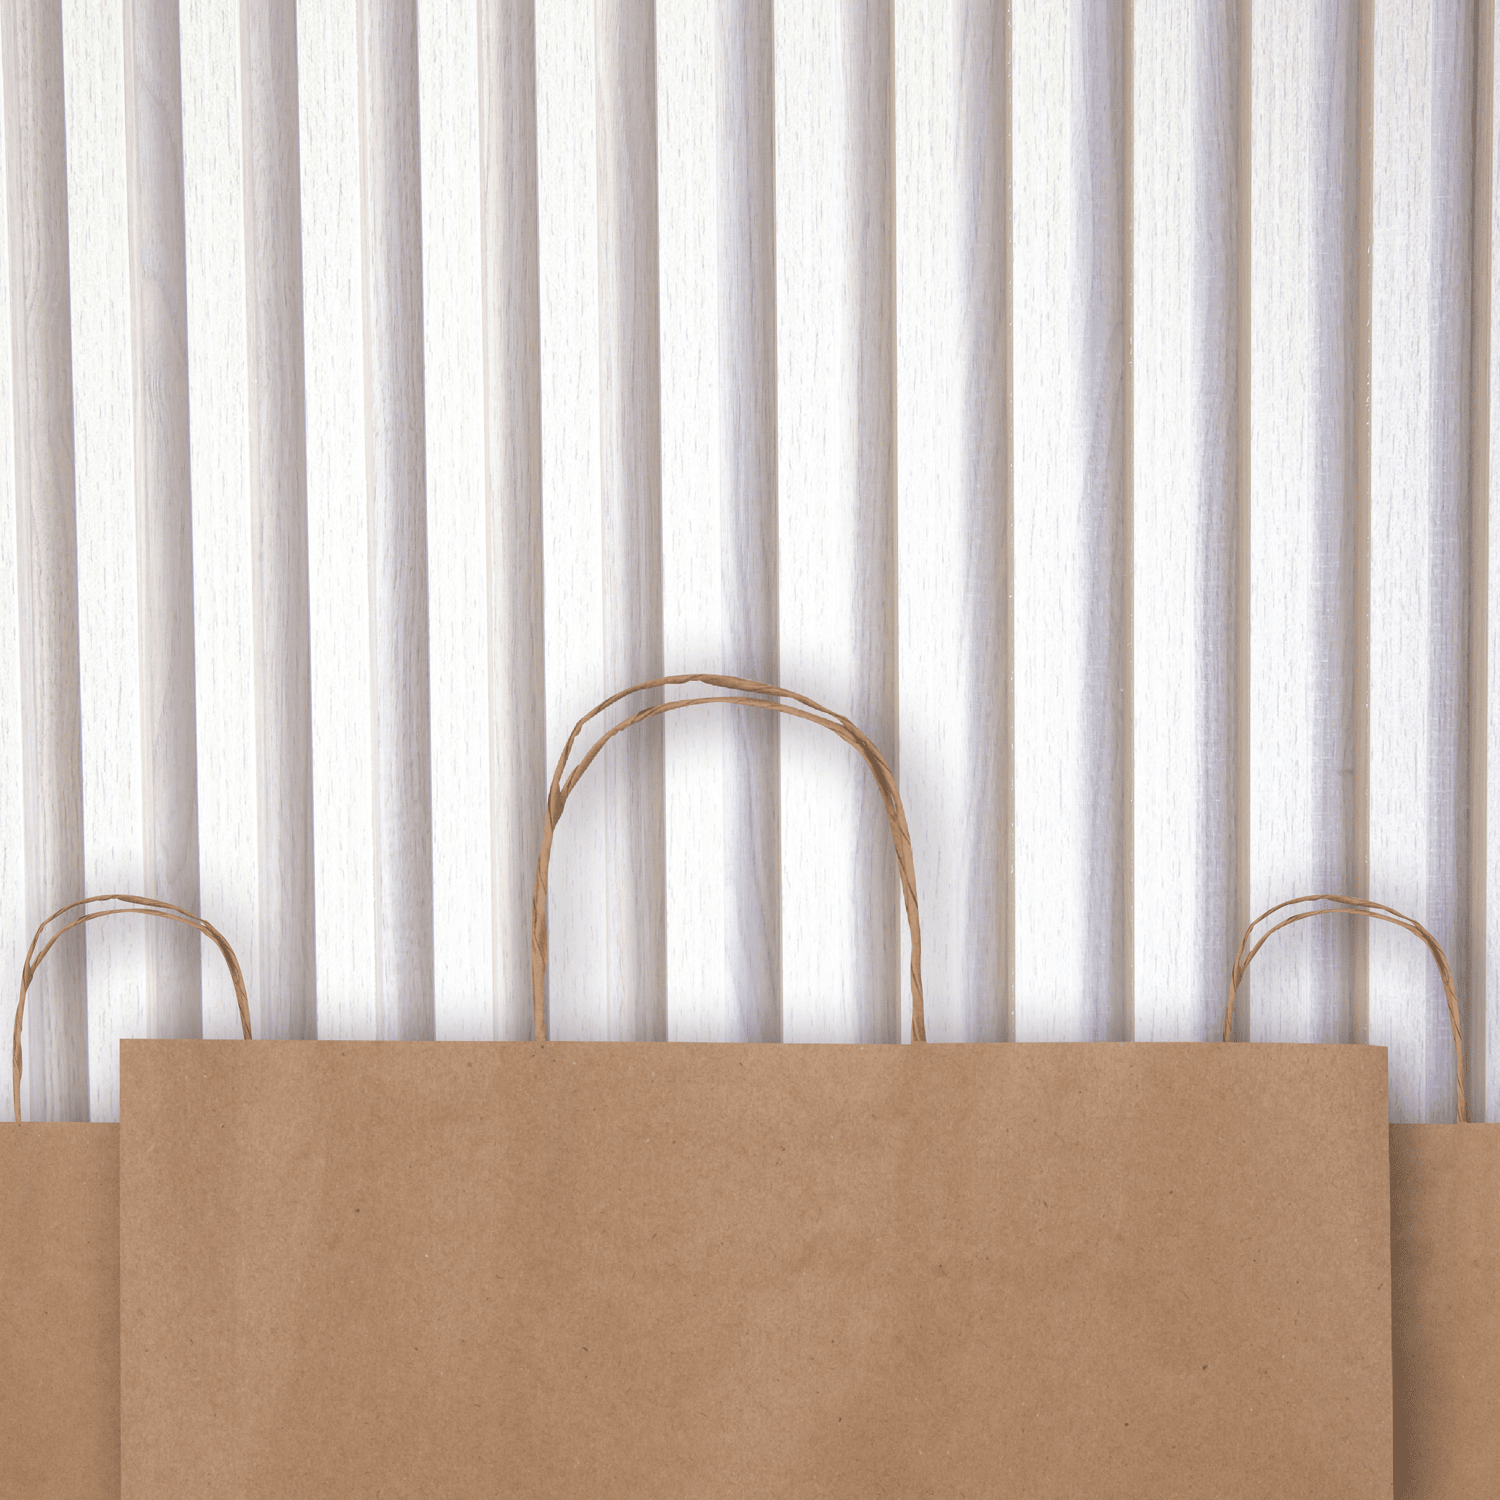 Brown Kraft Paper Bags with Handles Benefits of choosing Kraft Paper Bags